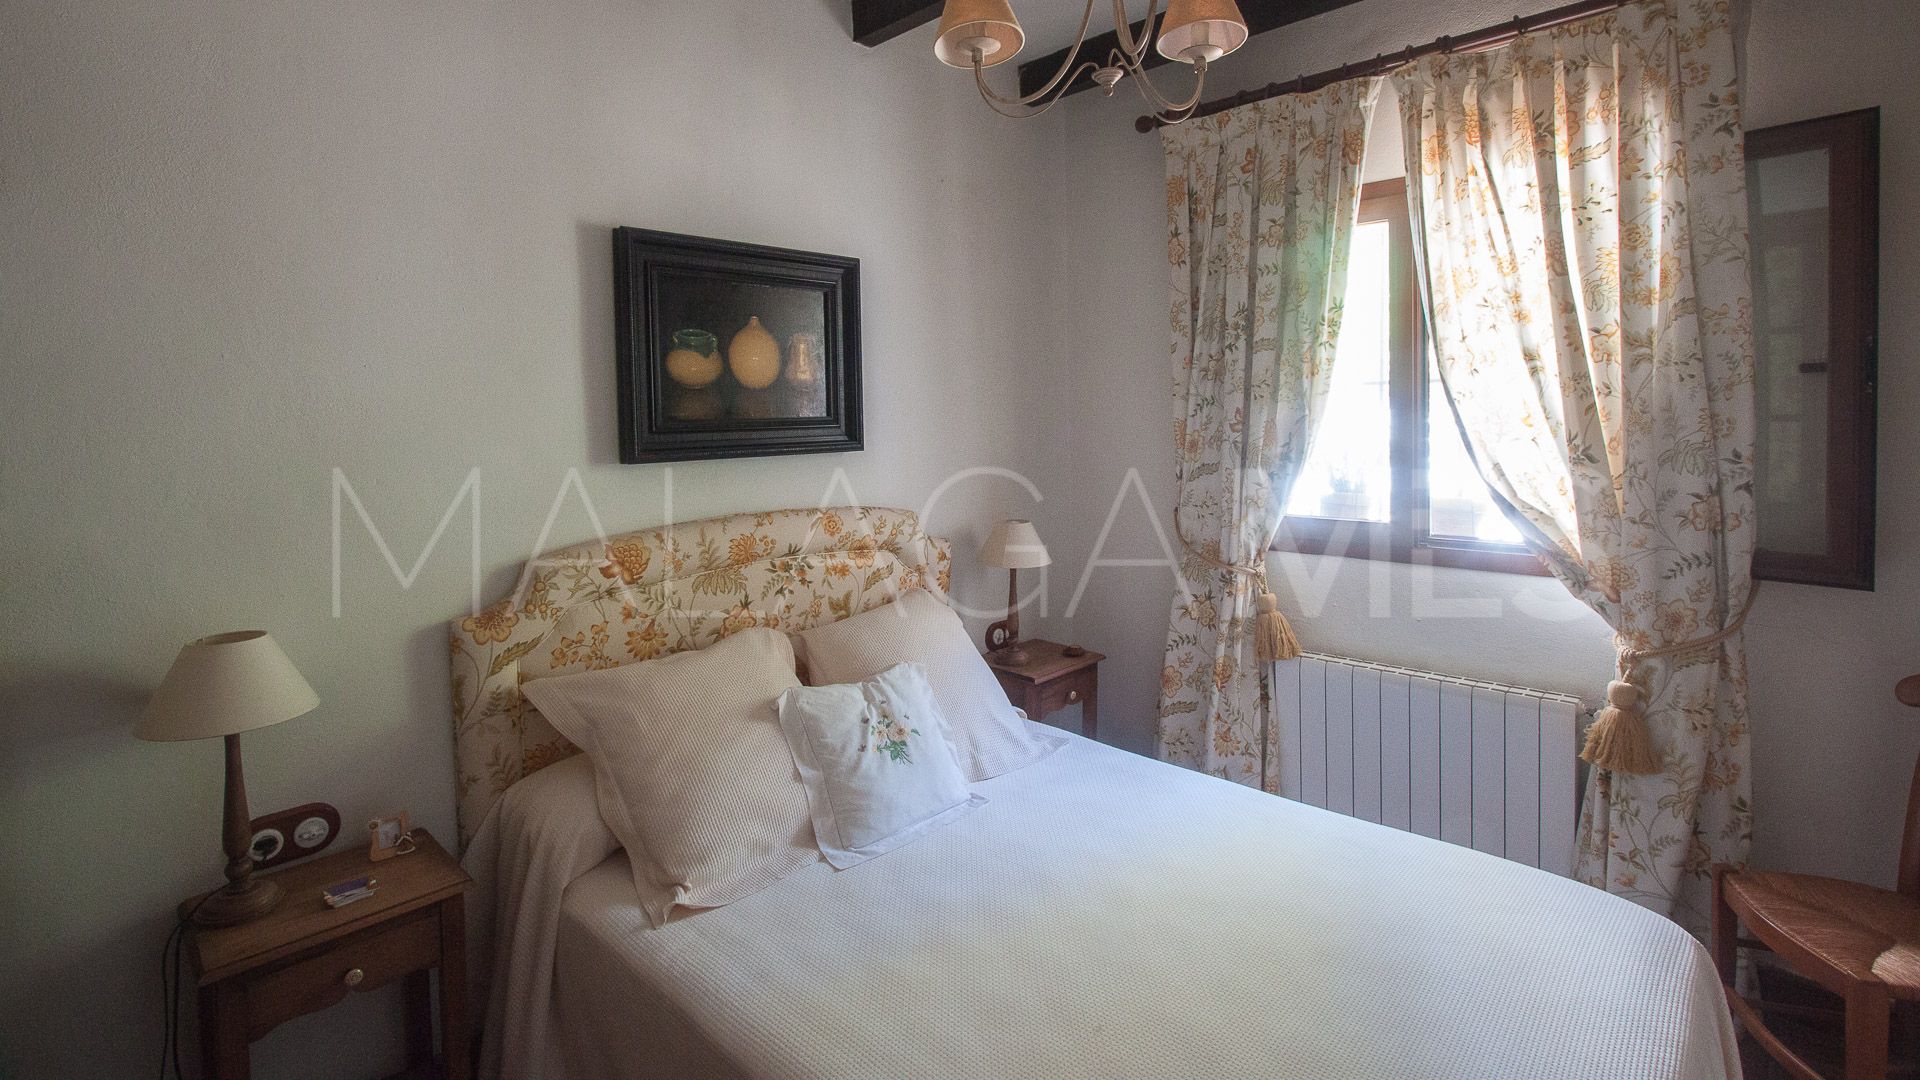 For sale finca in Gaucin with 4 bedrooms